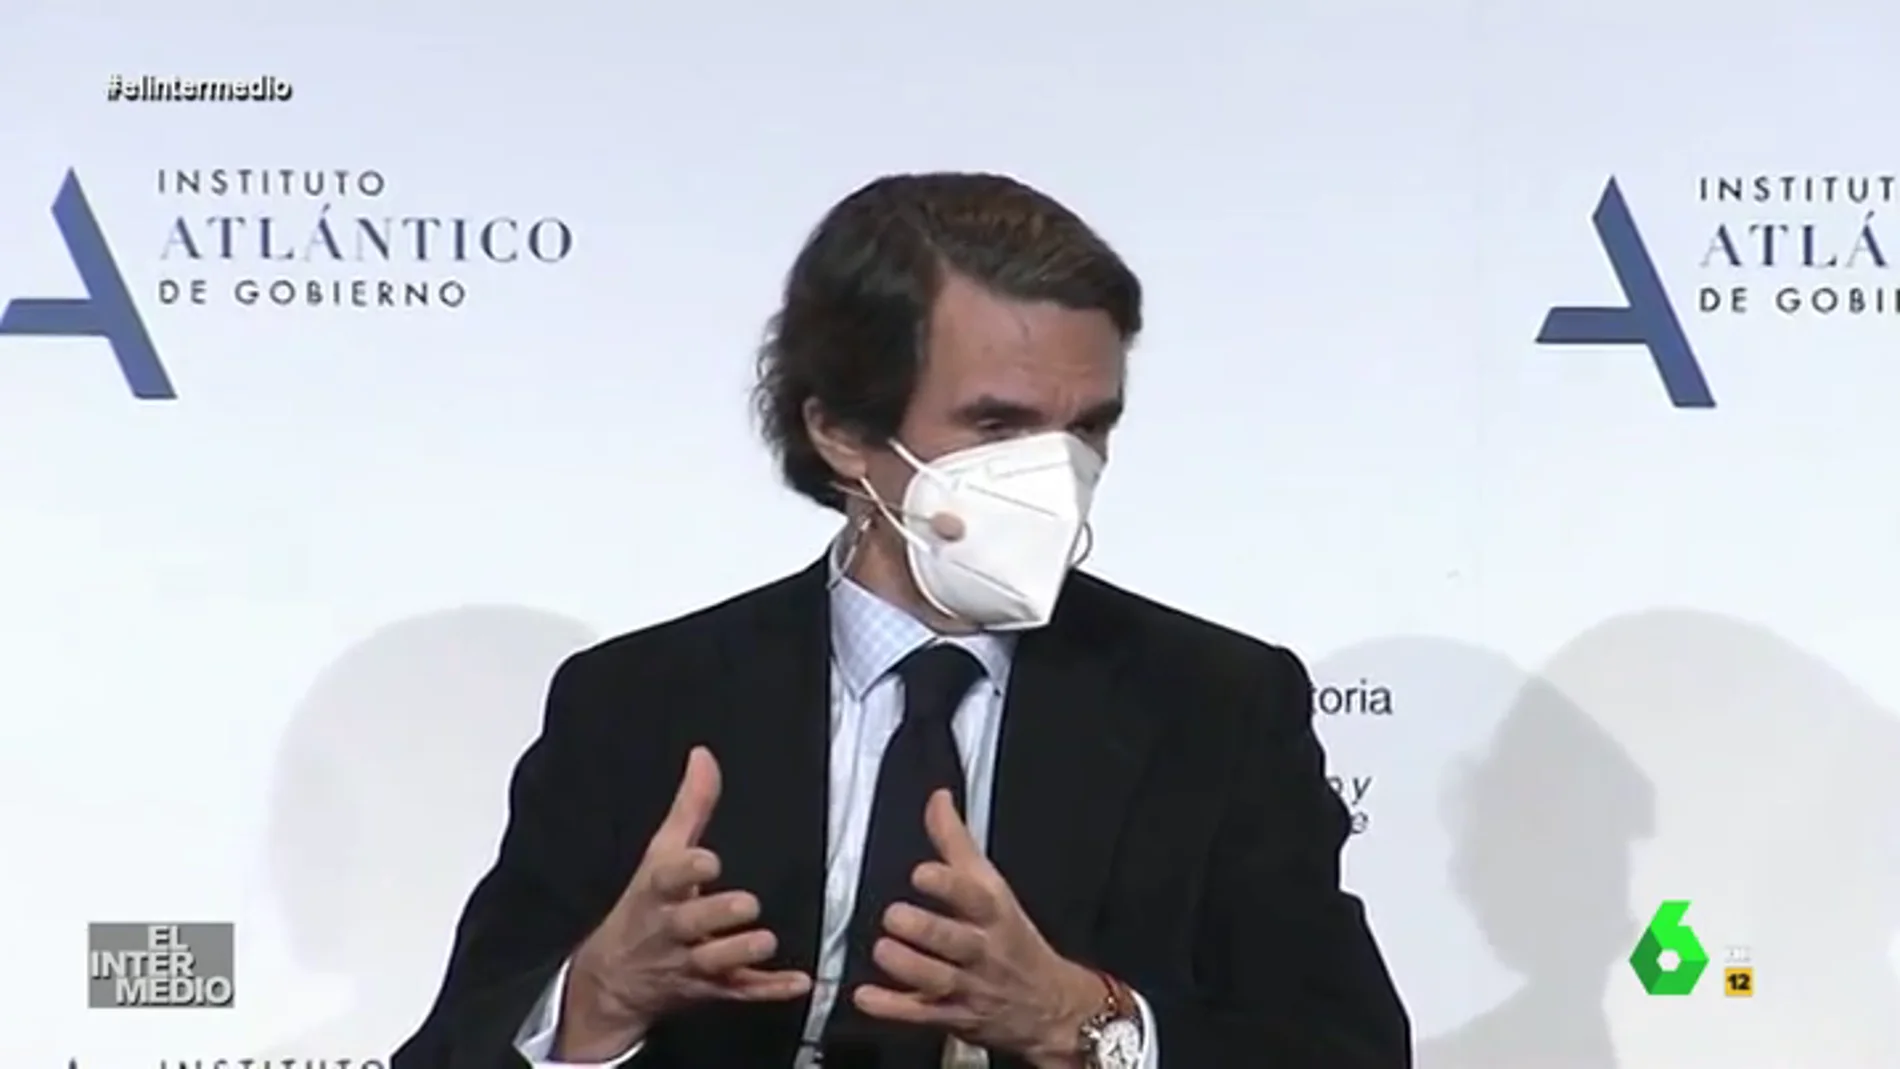 Vídeo manipulado: El discurso de Aznar al ritmo del 'Chiki Chiki' de Rodolfo Chikilicuatre